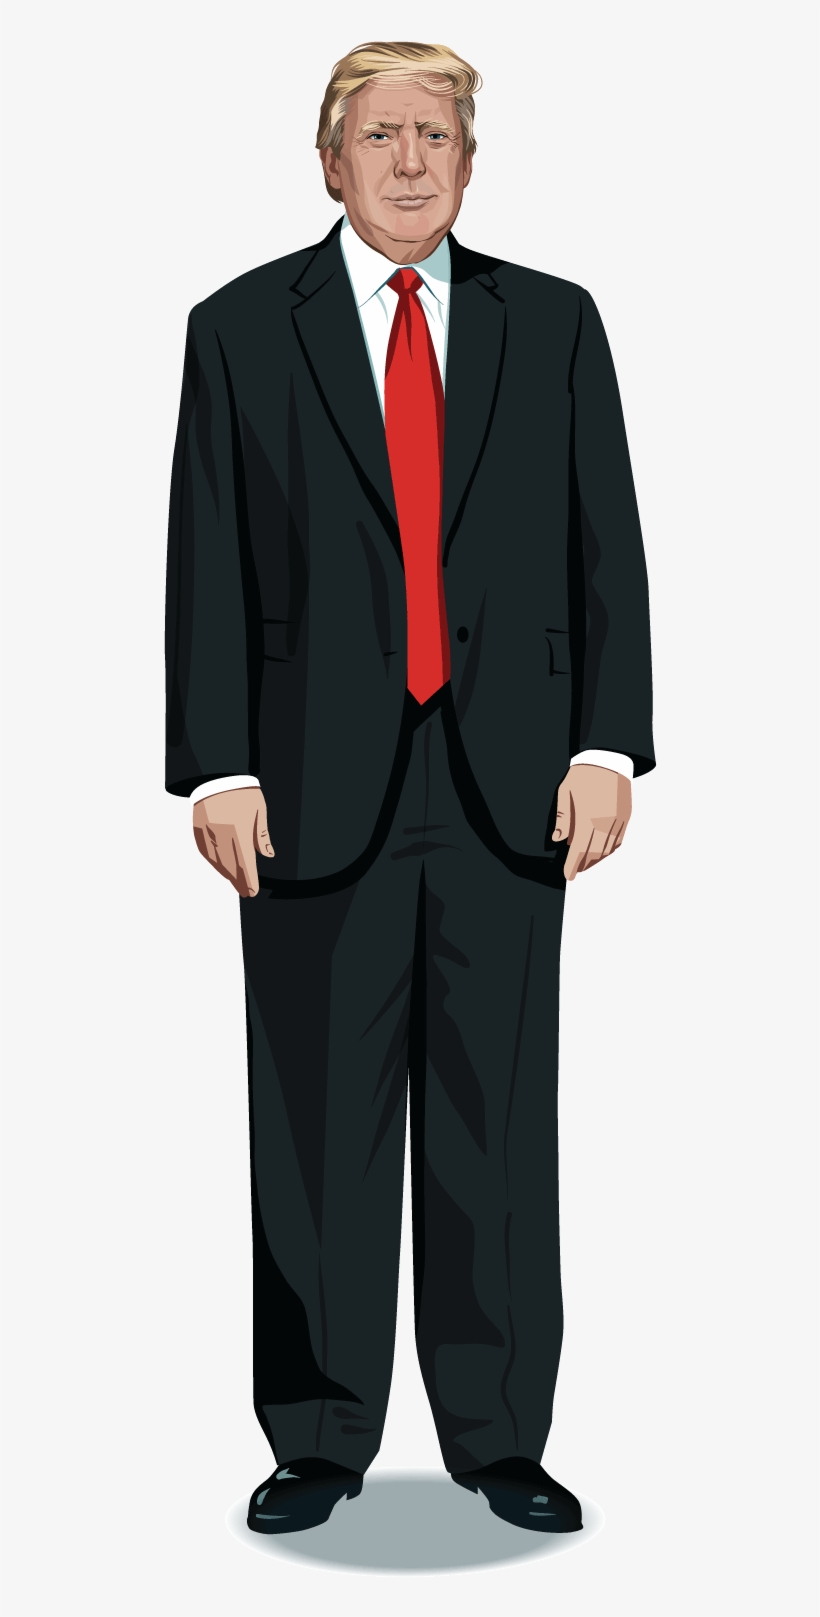 Trump Transparent Full Body - Mr.trump Mr.trump Oval Ornament, transparent png #176171